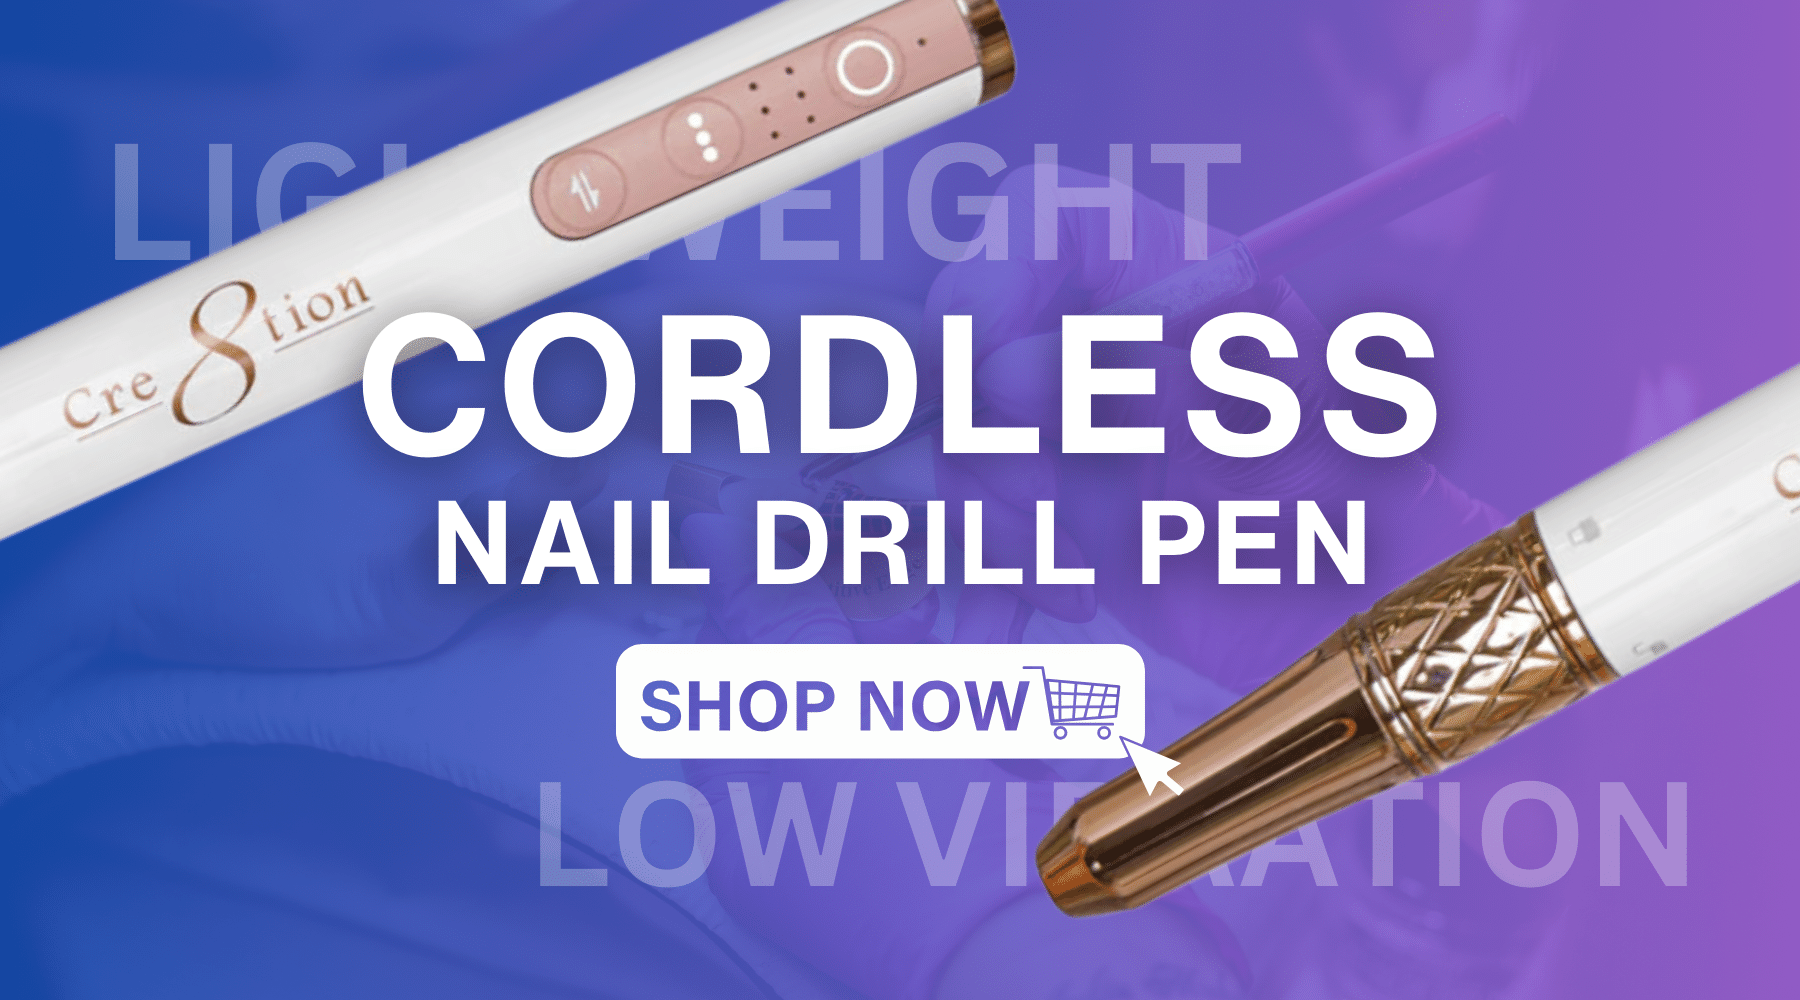 Cre8tion, Cordless Drill, Nail Drill, Nail Filer, Nail File, Nail Supply, Nail Supplies, Nail Supply Store, C8 Nail Supply